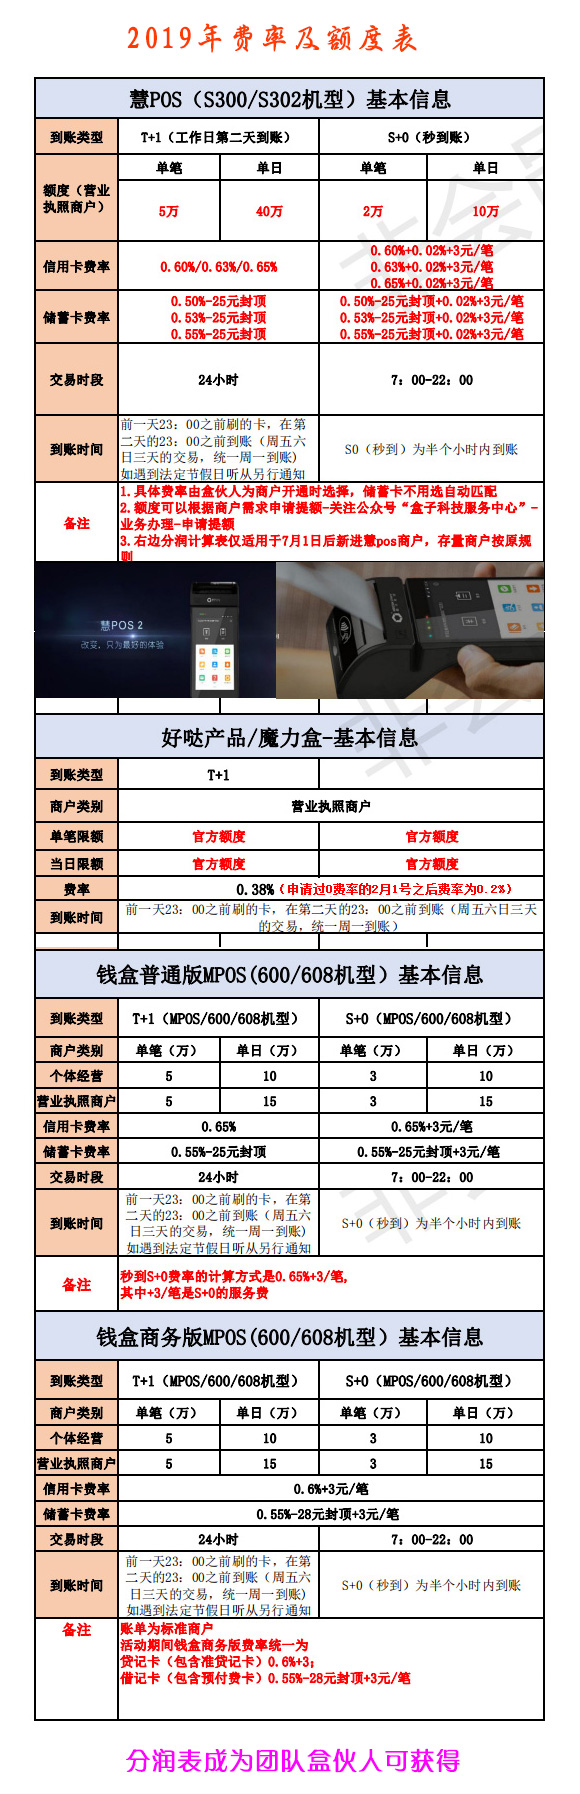 盒子科技北京服务商2019年额度费率表.jpg